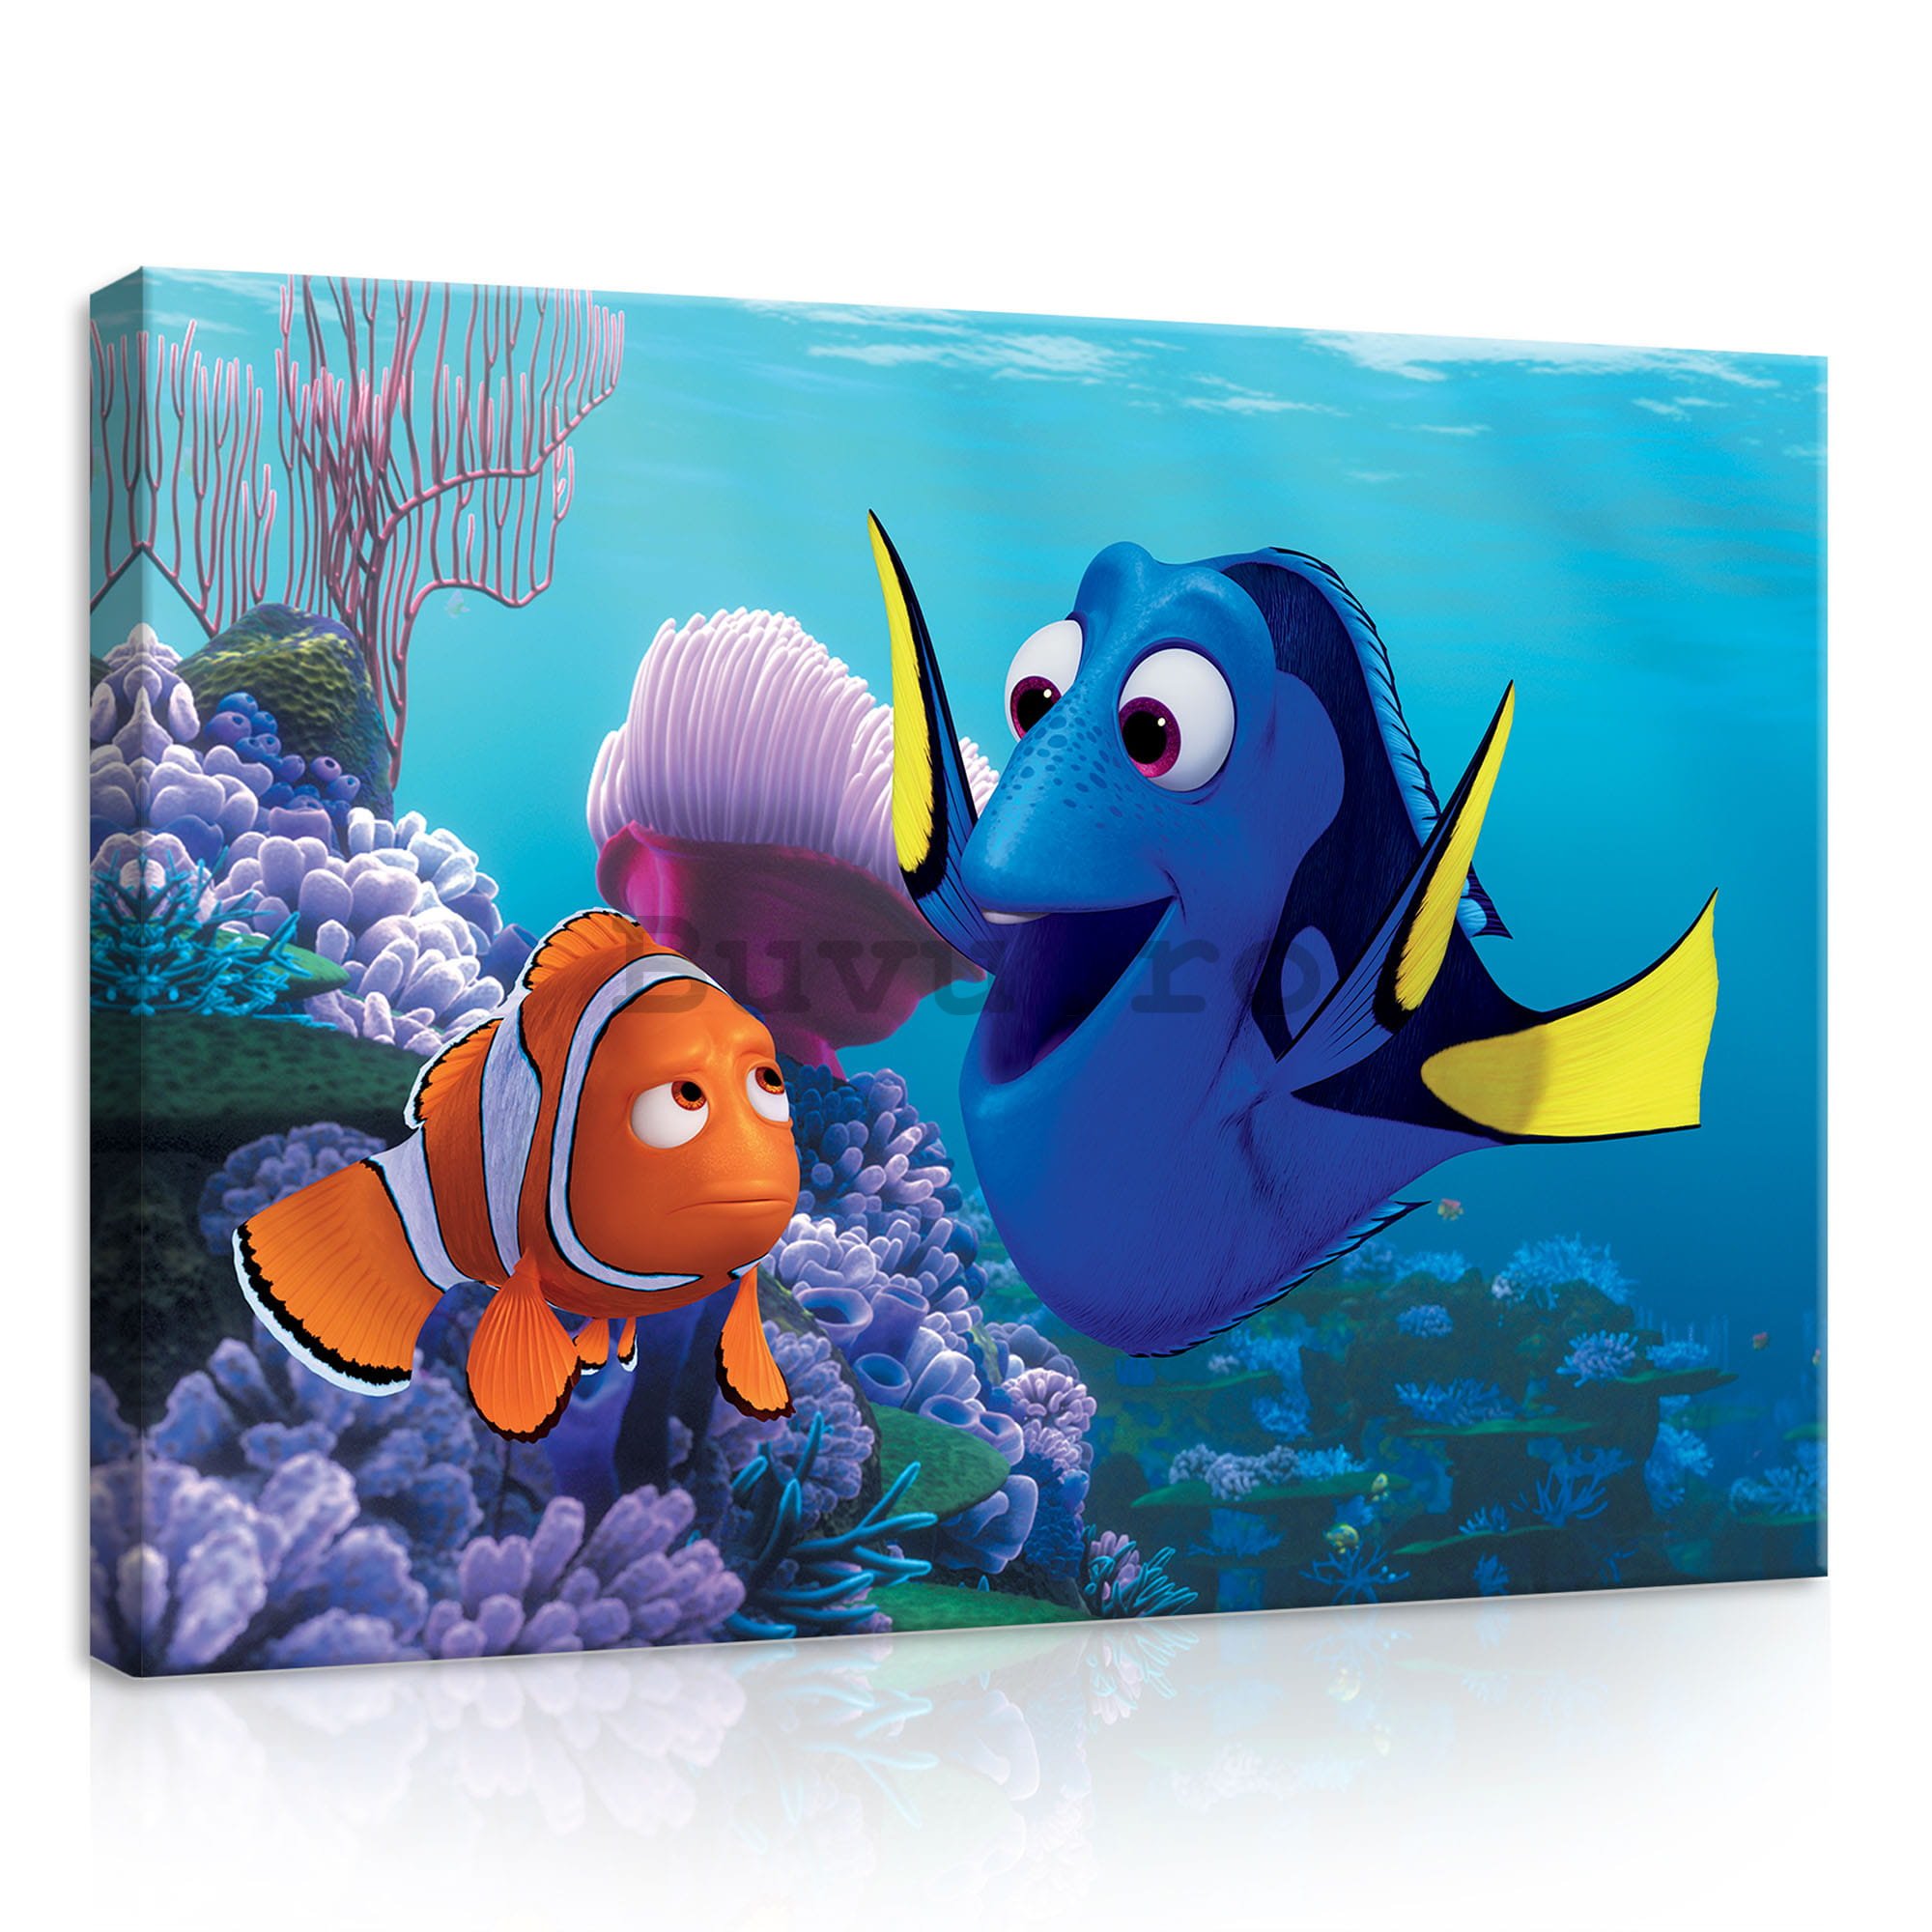 Tablou canvas: În căutarea lui Nemo (Marlin & Dory) - 35x25 cm